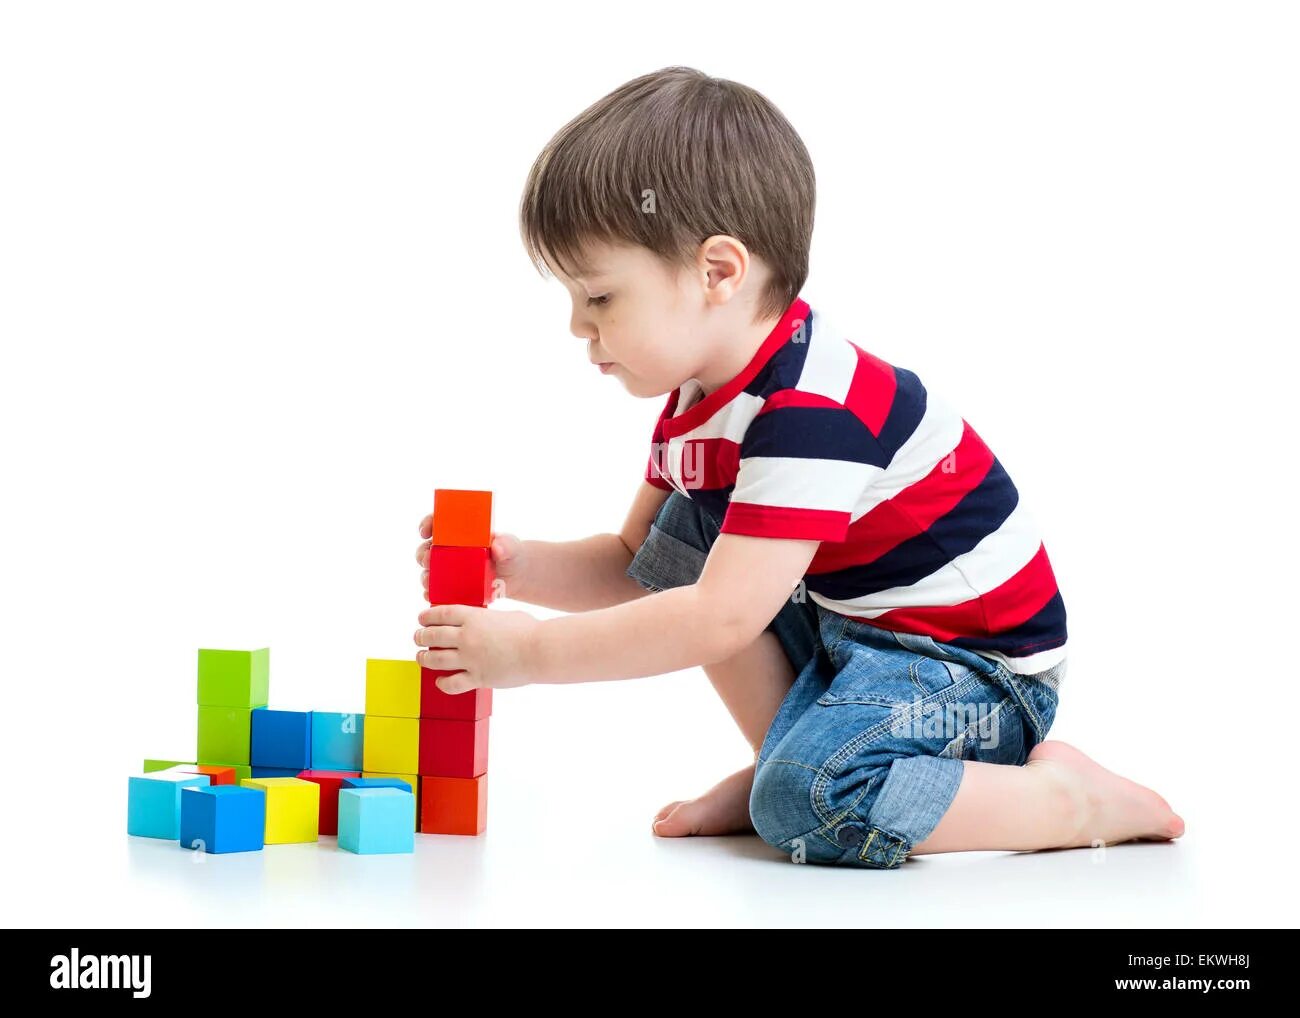 Мальчик играет на полу. Дети играют в кубики. Играющий мальчик. Мальчик играет в кубики. Игрушки на полу.